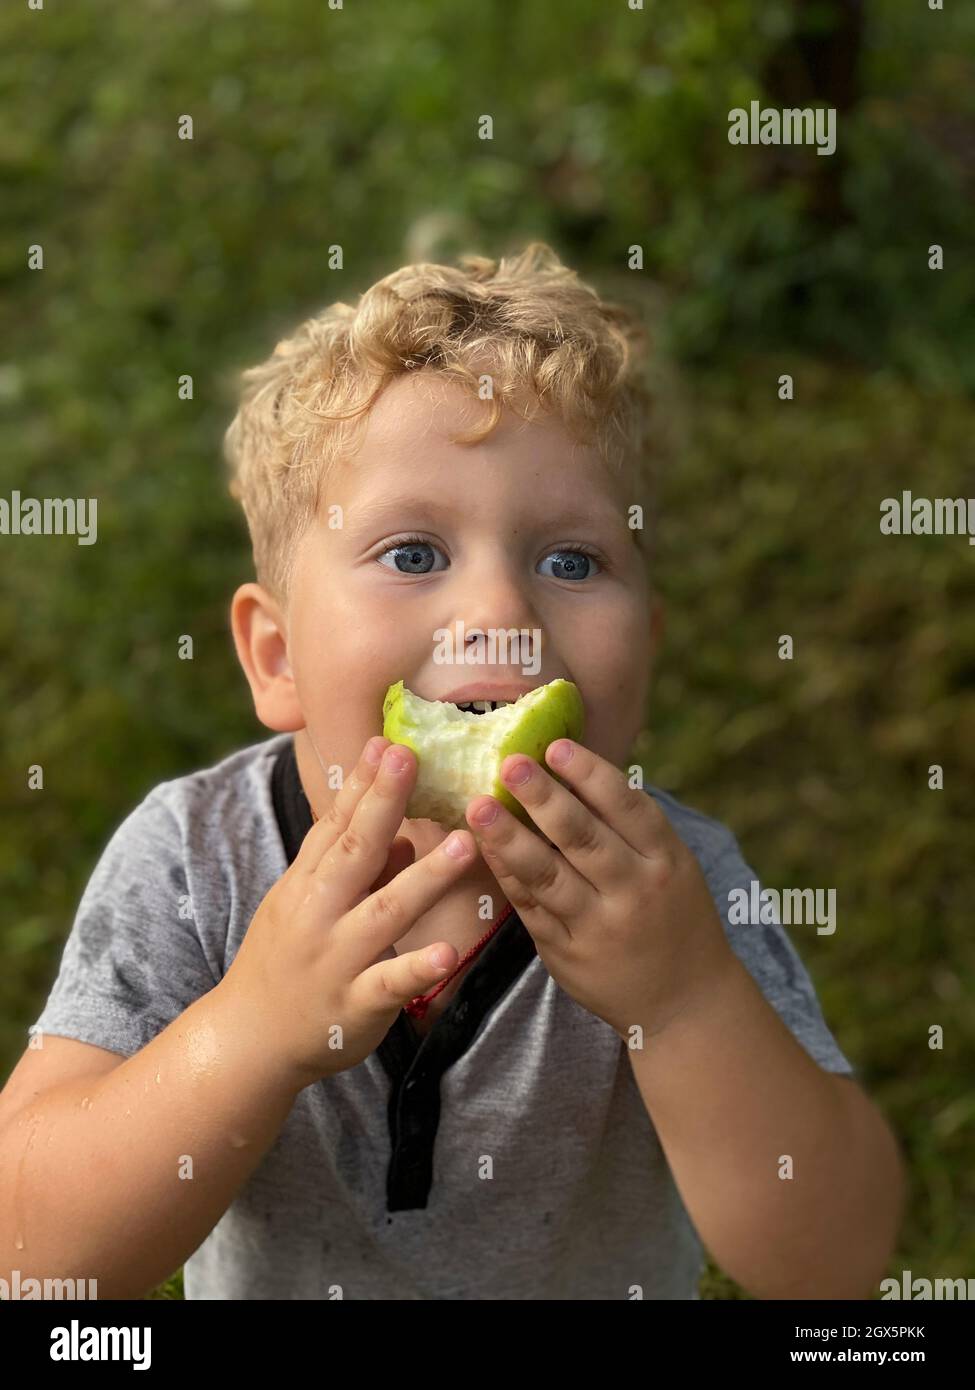 Junge in einem grauen T-Shirt frisst einen grünen Apfel im Garten Stockfoto